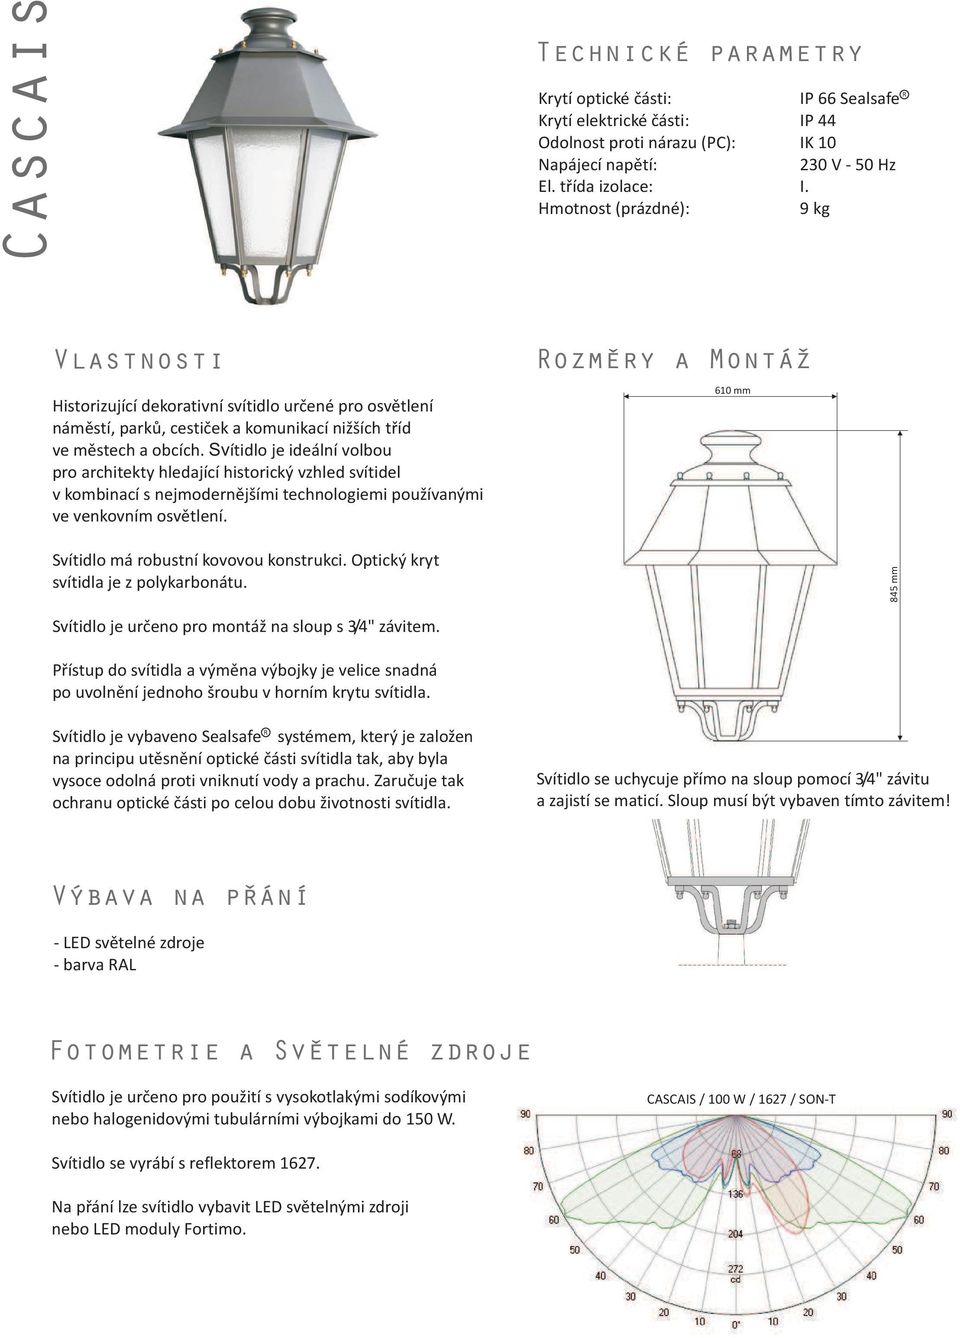 Svítidlo je ideální volbou pro architekty hledající historický vzhled svítidel v kombinací s nejmodernìjšími technologiemi pou ívanými ve venkovním osvìtlení. Svítidlo má robustní kovovou konstrukci.